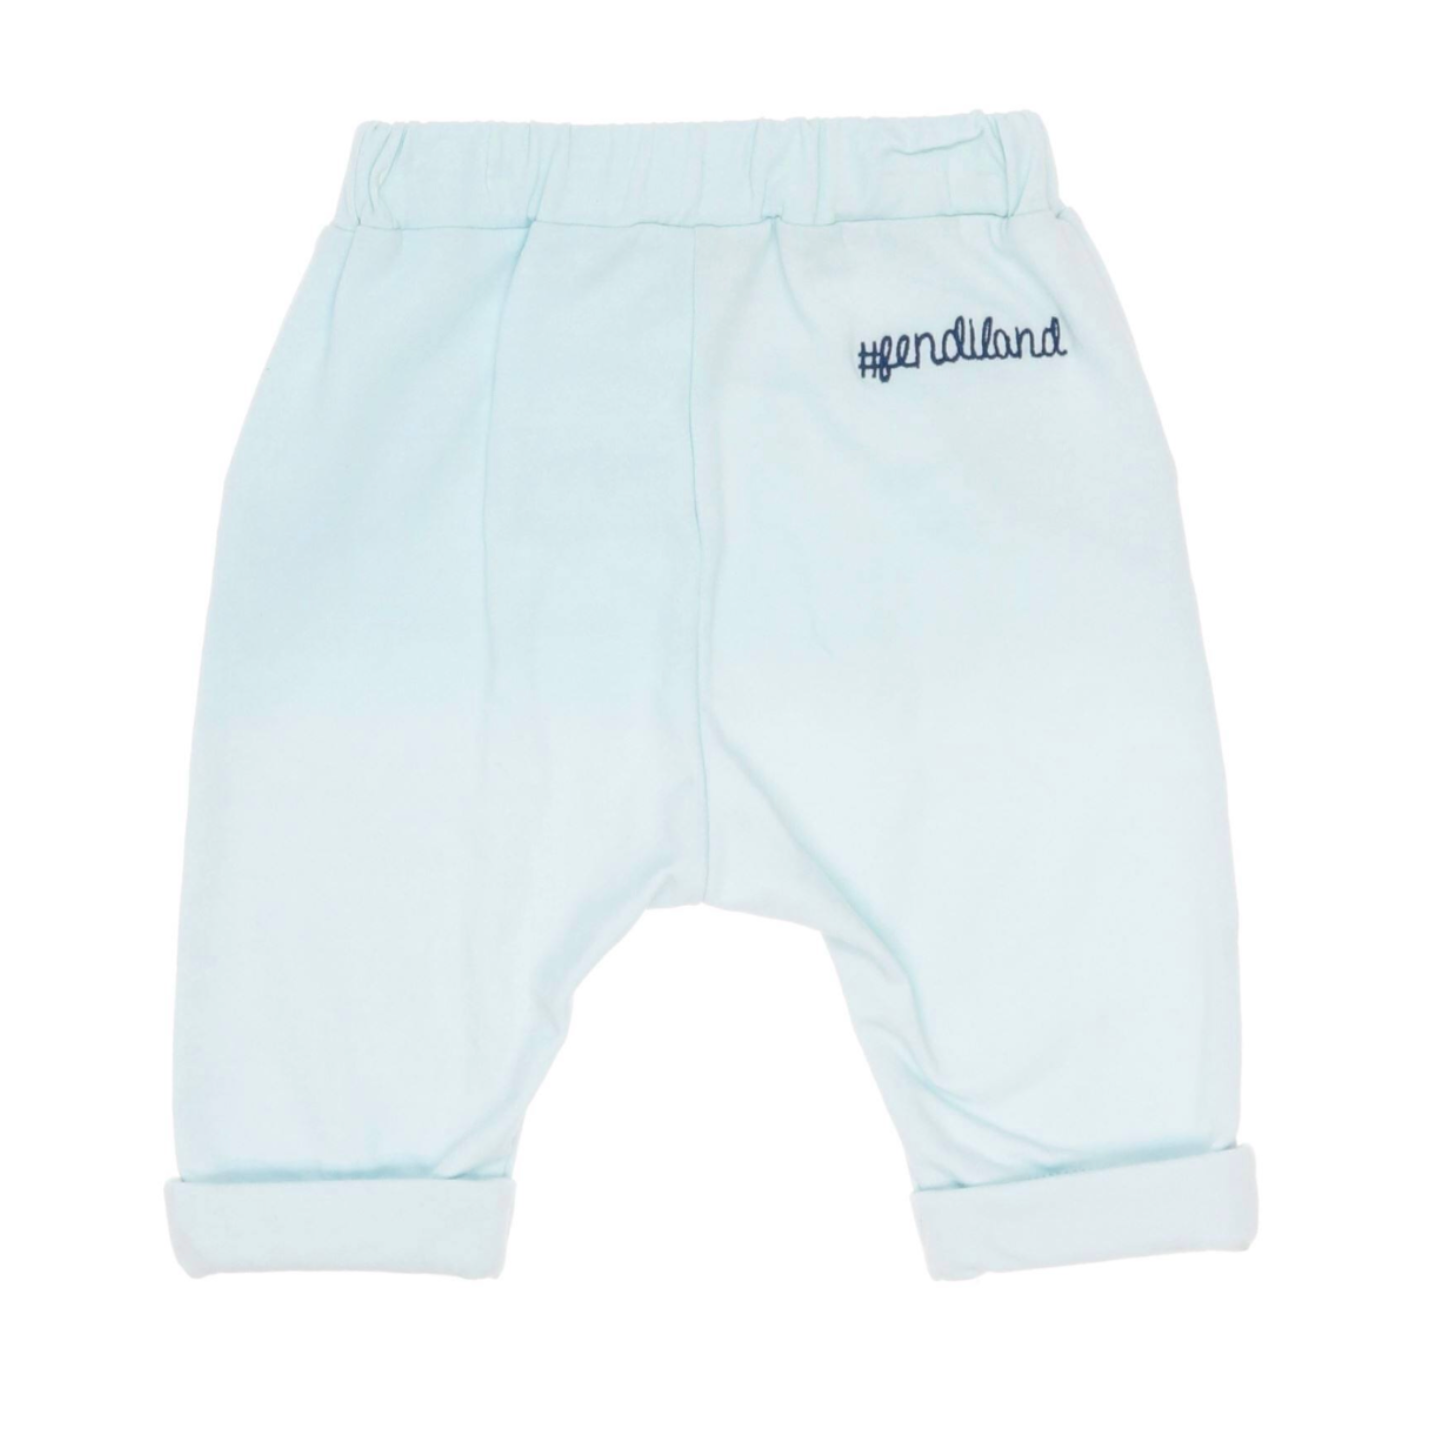 FENDI - Fendiland pale blue jogging pants - 3 months